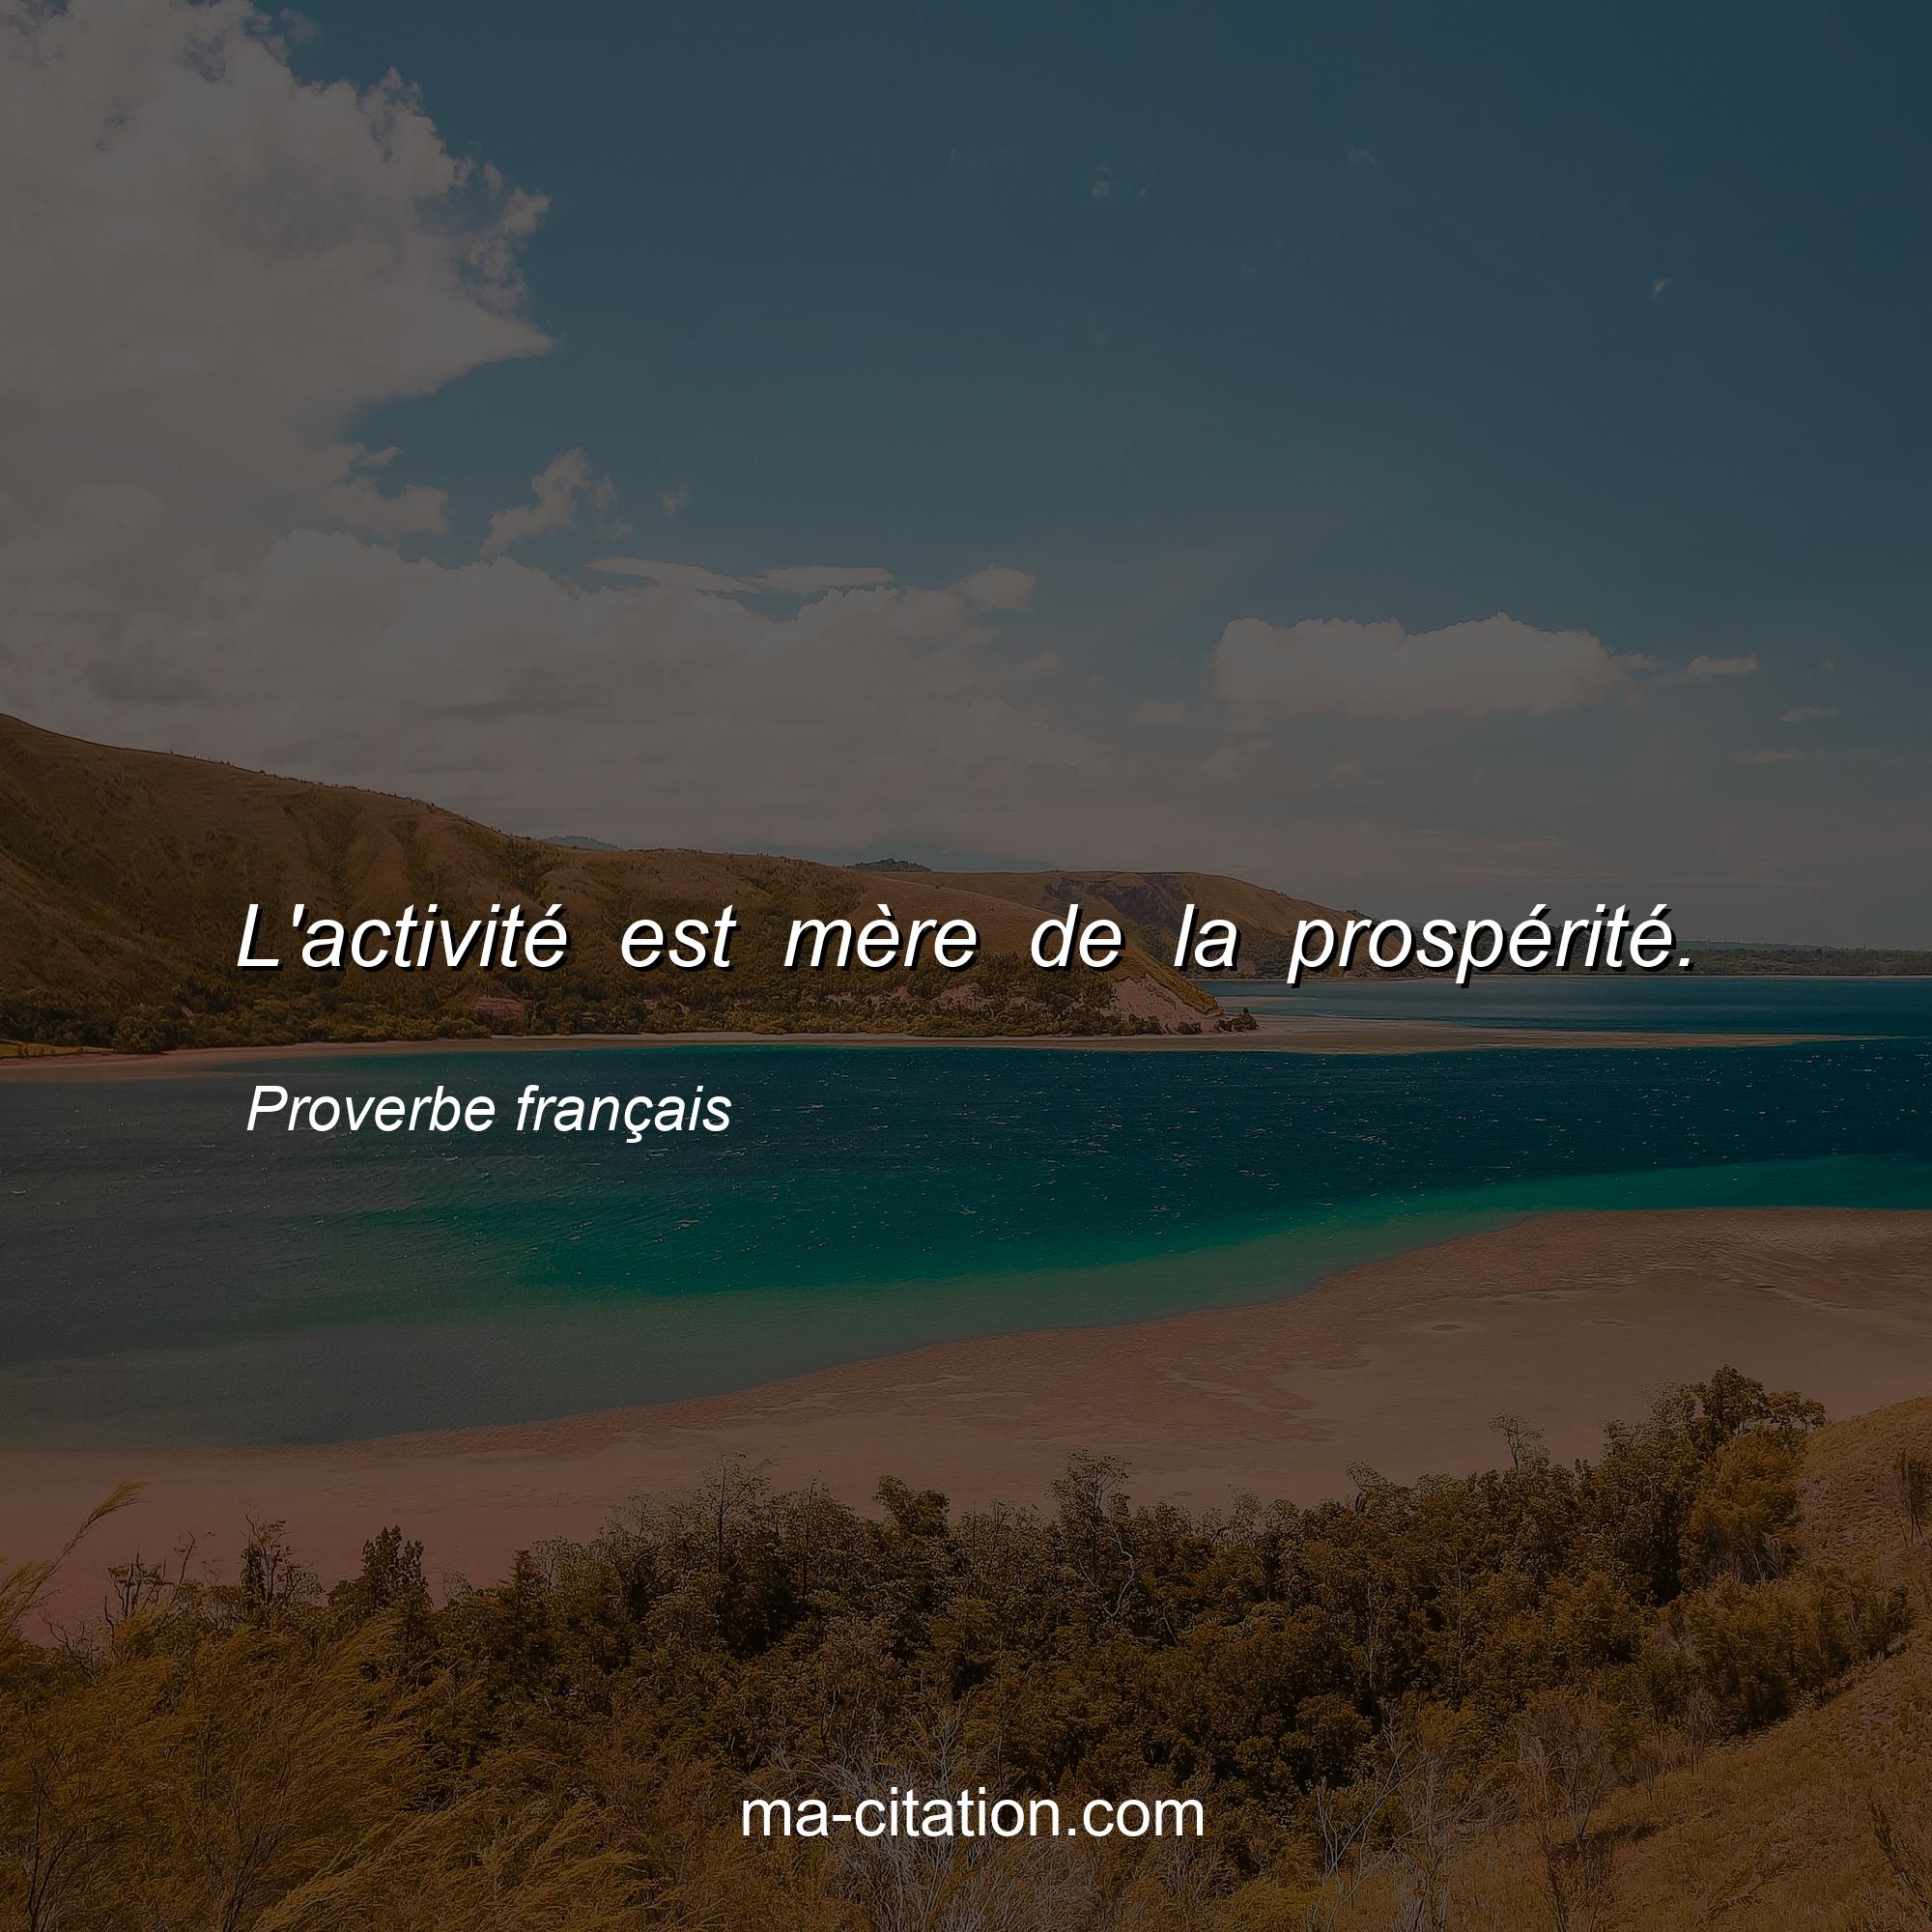 Proverbe français : L'activité est mère de la prospérité.